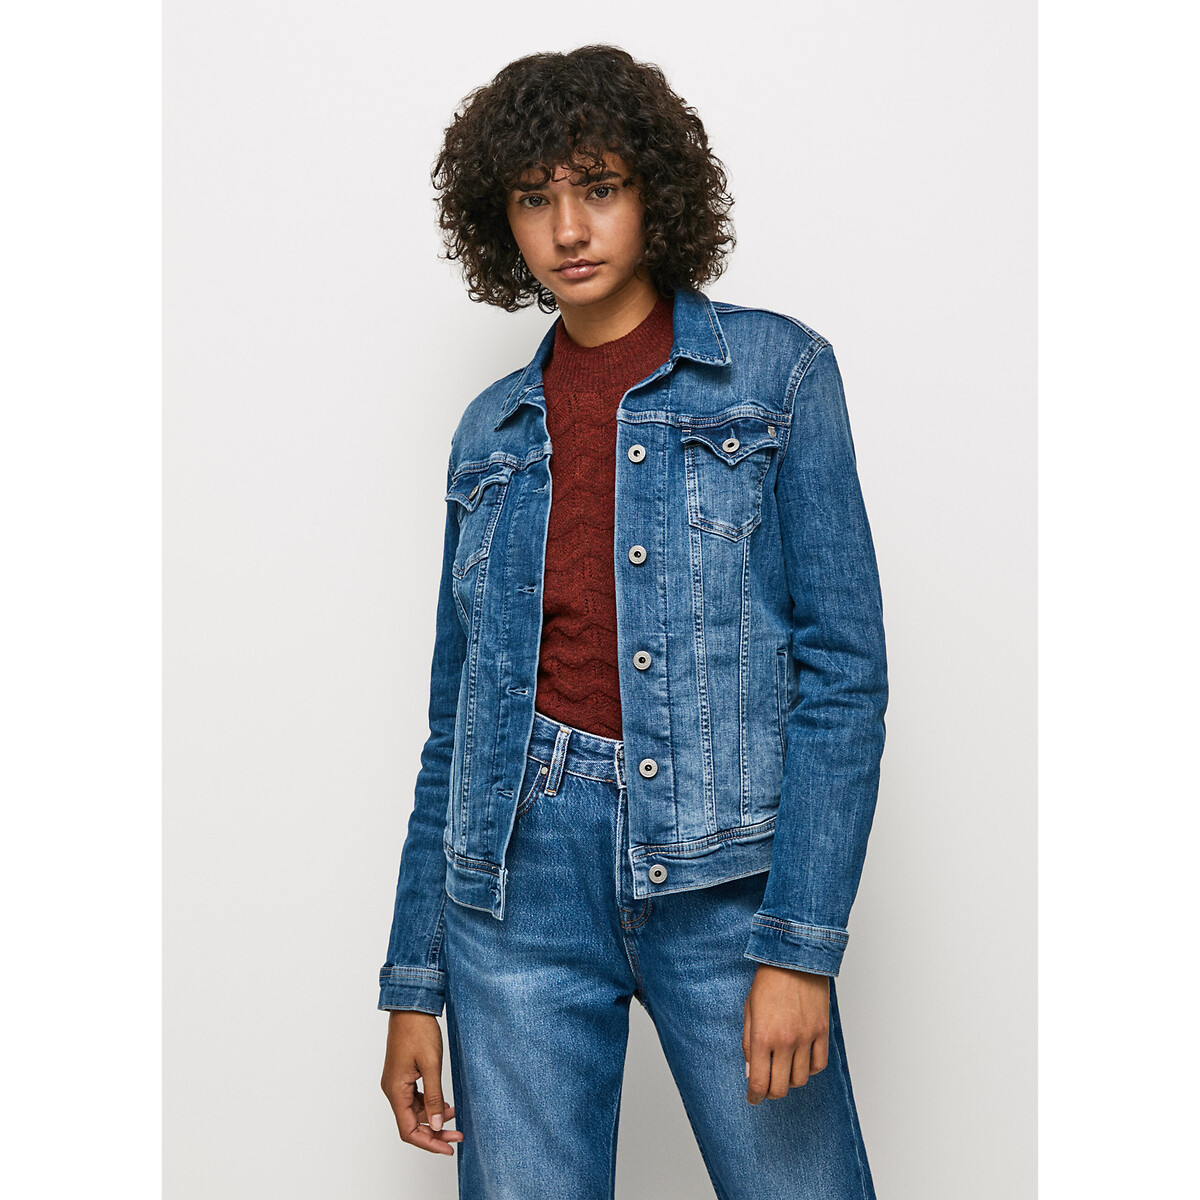 Куртка прямого покроя из джинсовой ткани M синий куртка из джинсовой ткани средней длины xl синий